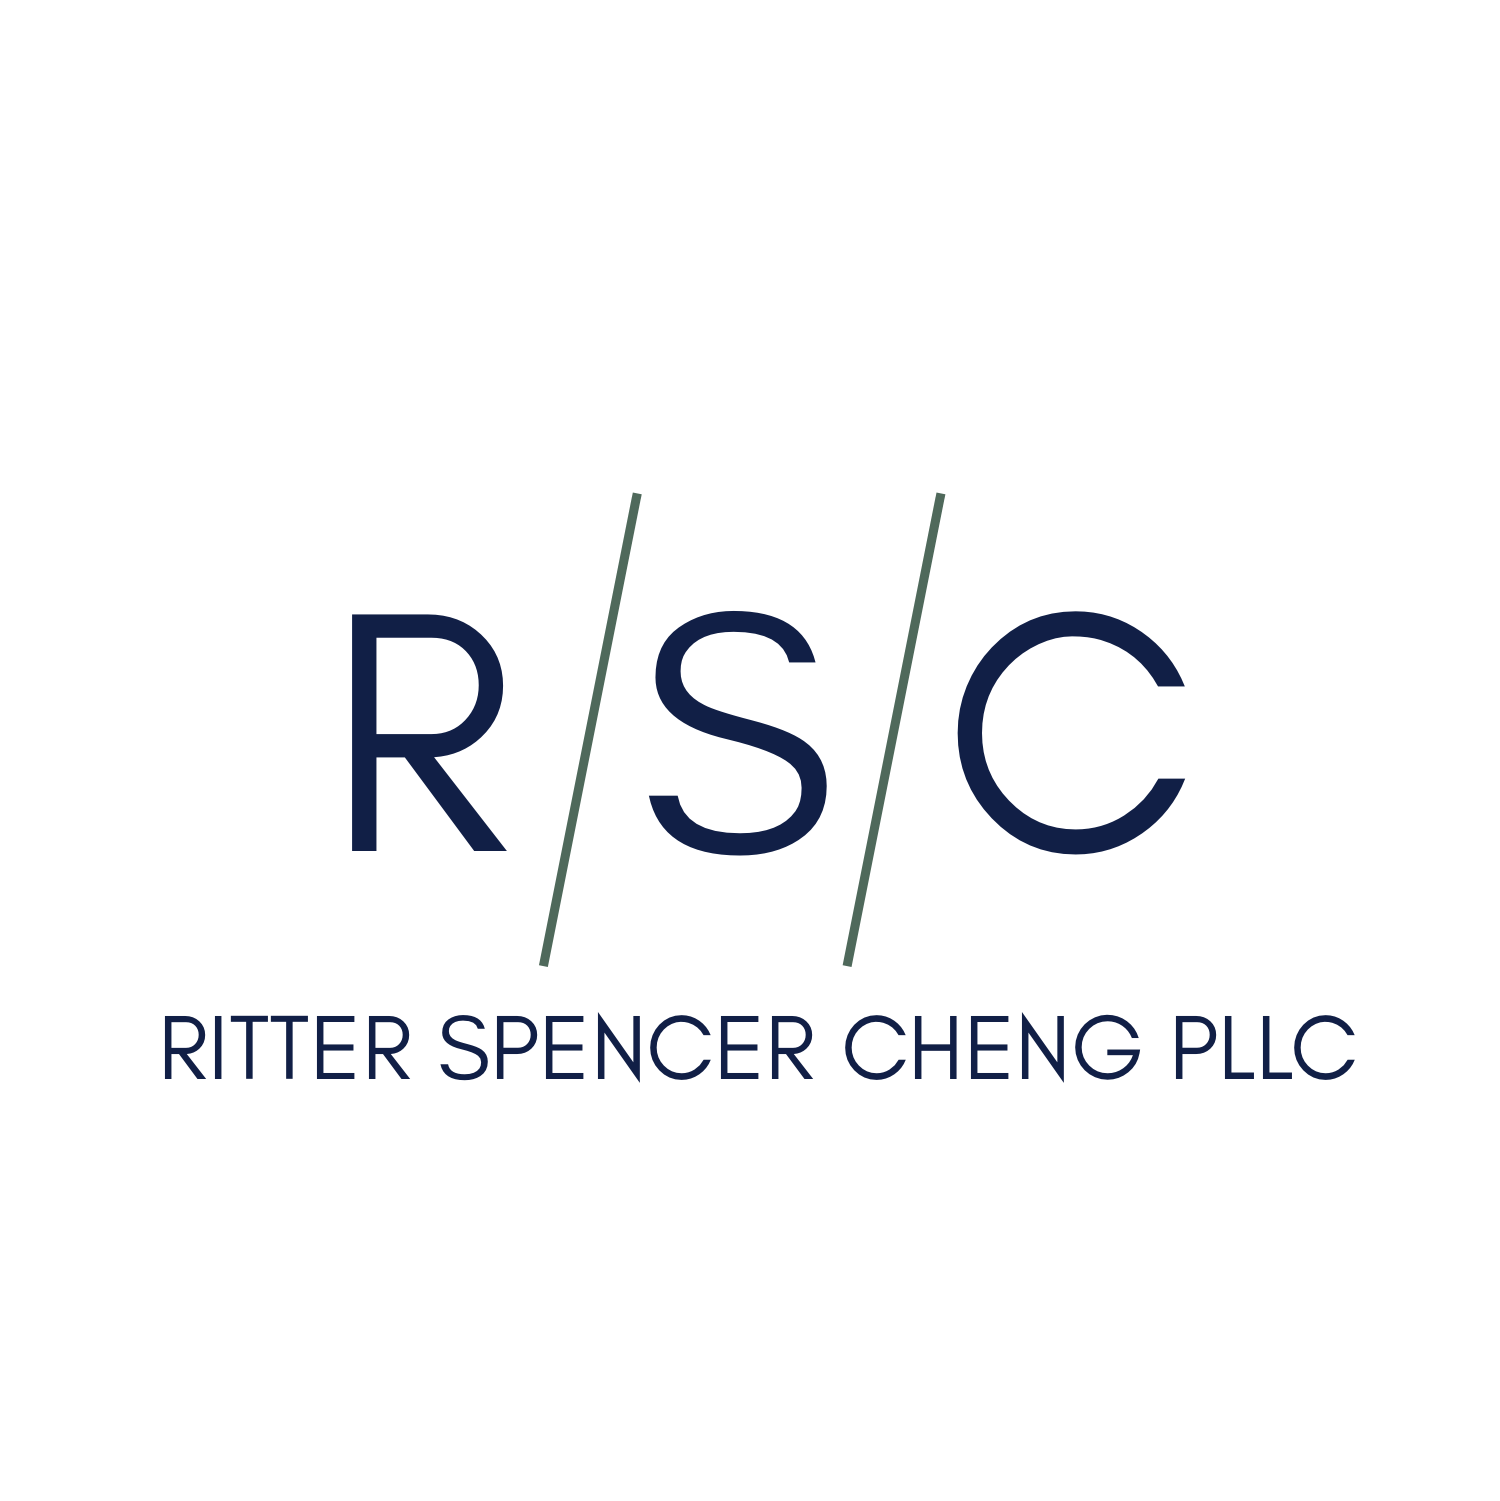 Ritter Spencer Cheng PLLC